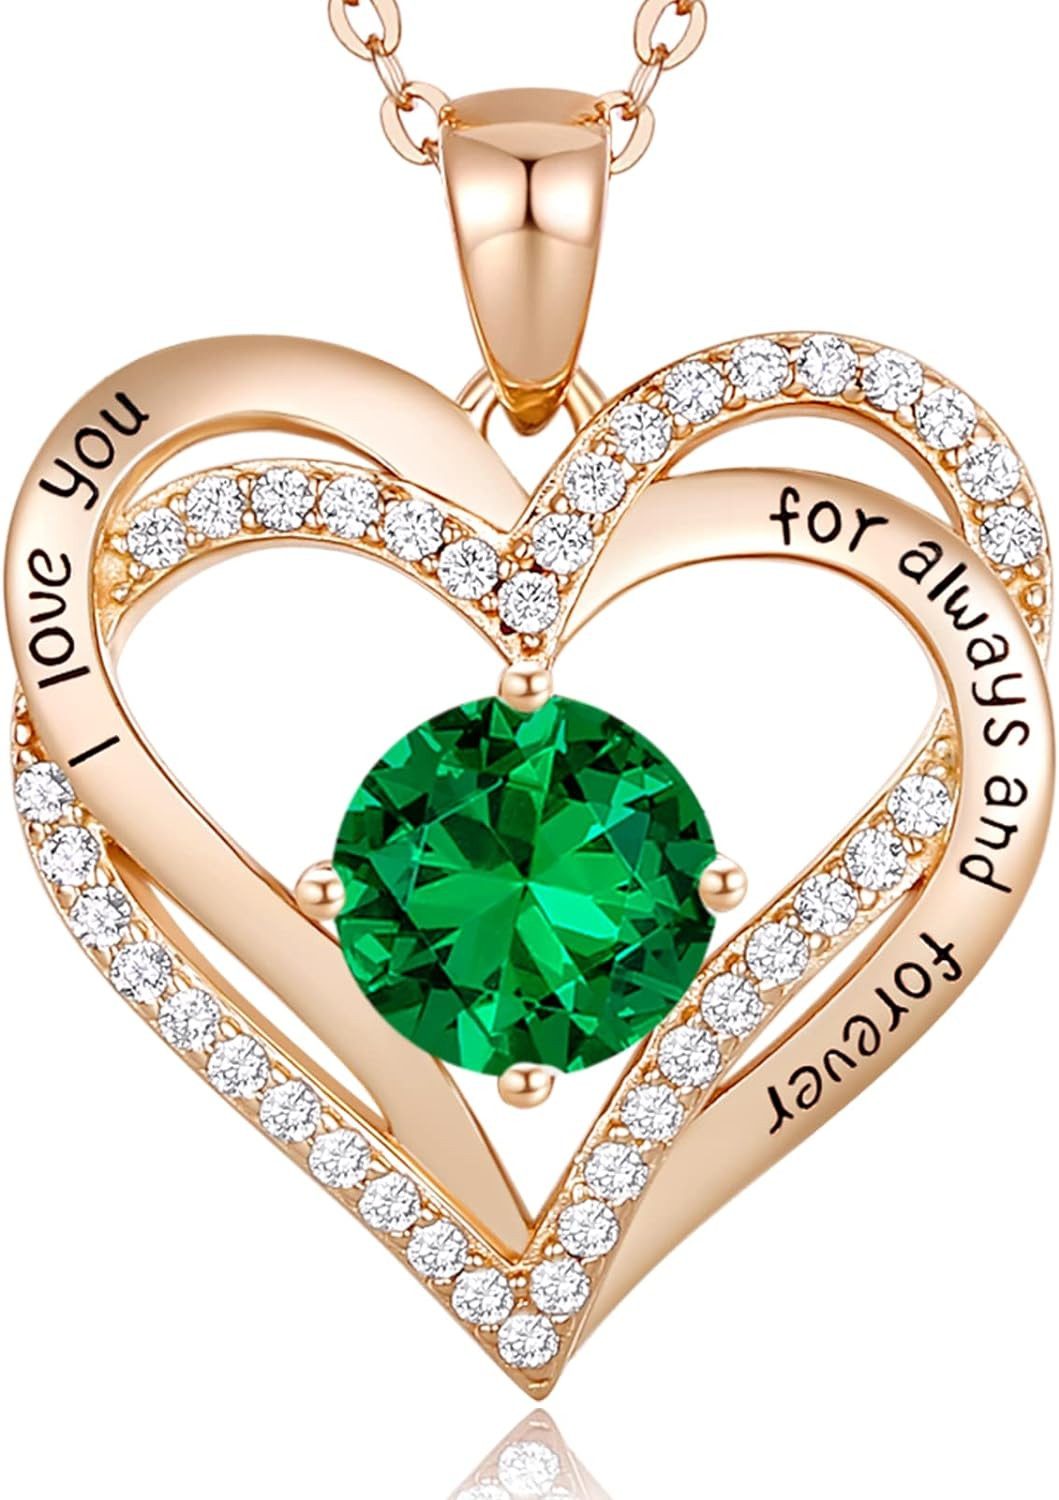 HEYHIPPO Charm-Kette Exquisite Roségold-Halskette mit Herzanhänger und strahlendem, grünem Zirkonia – Perfektes Geschenk für besondere Anlässe